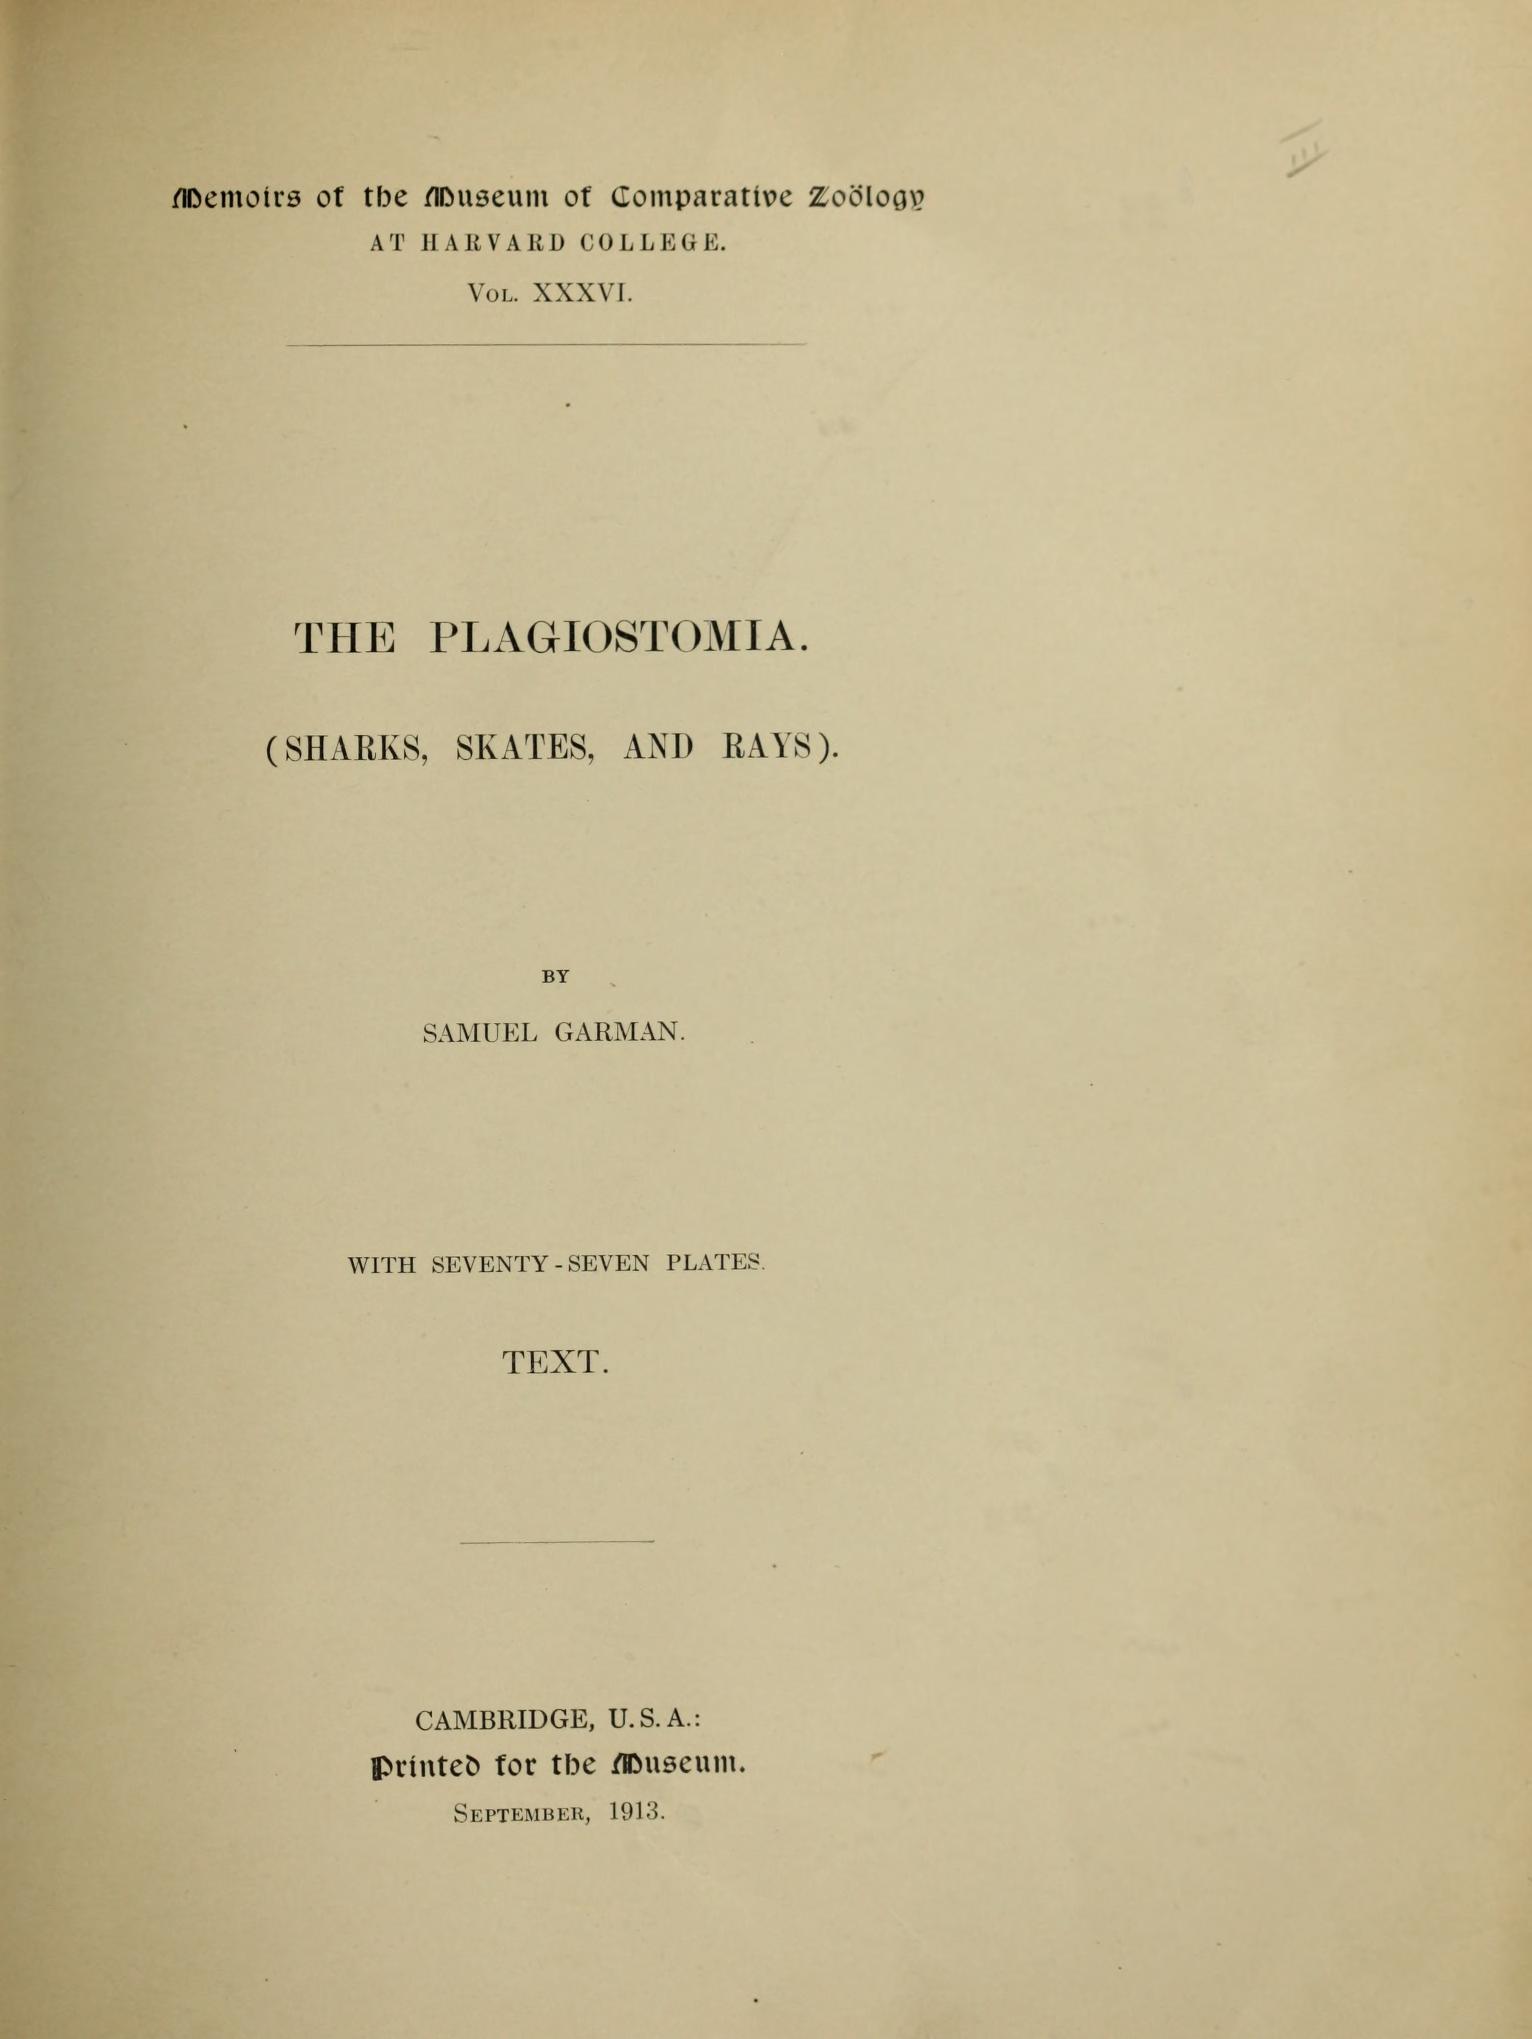 Media type: text; Garman 1913 Description: MCZ Memoirs Vol. XXXVI [Text];